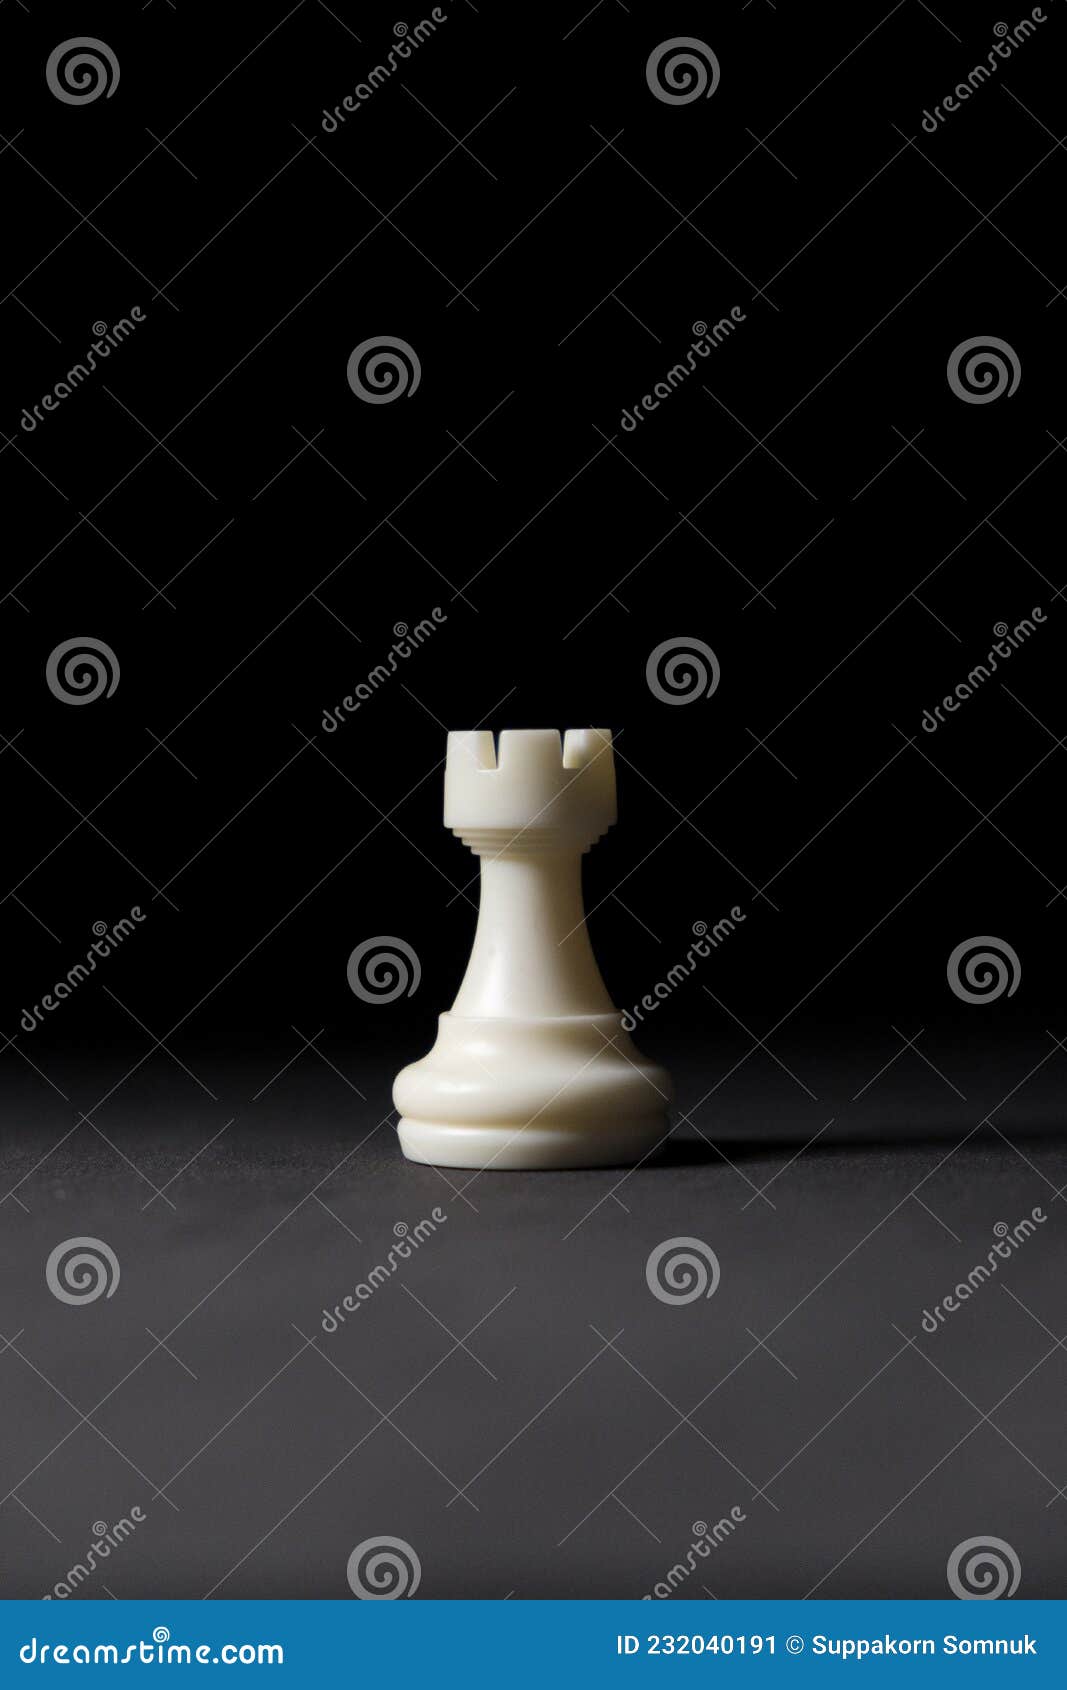 A composição das peças de xadrez isoladas no fundo branco